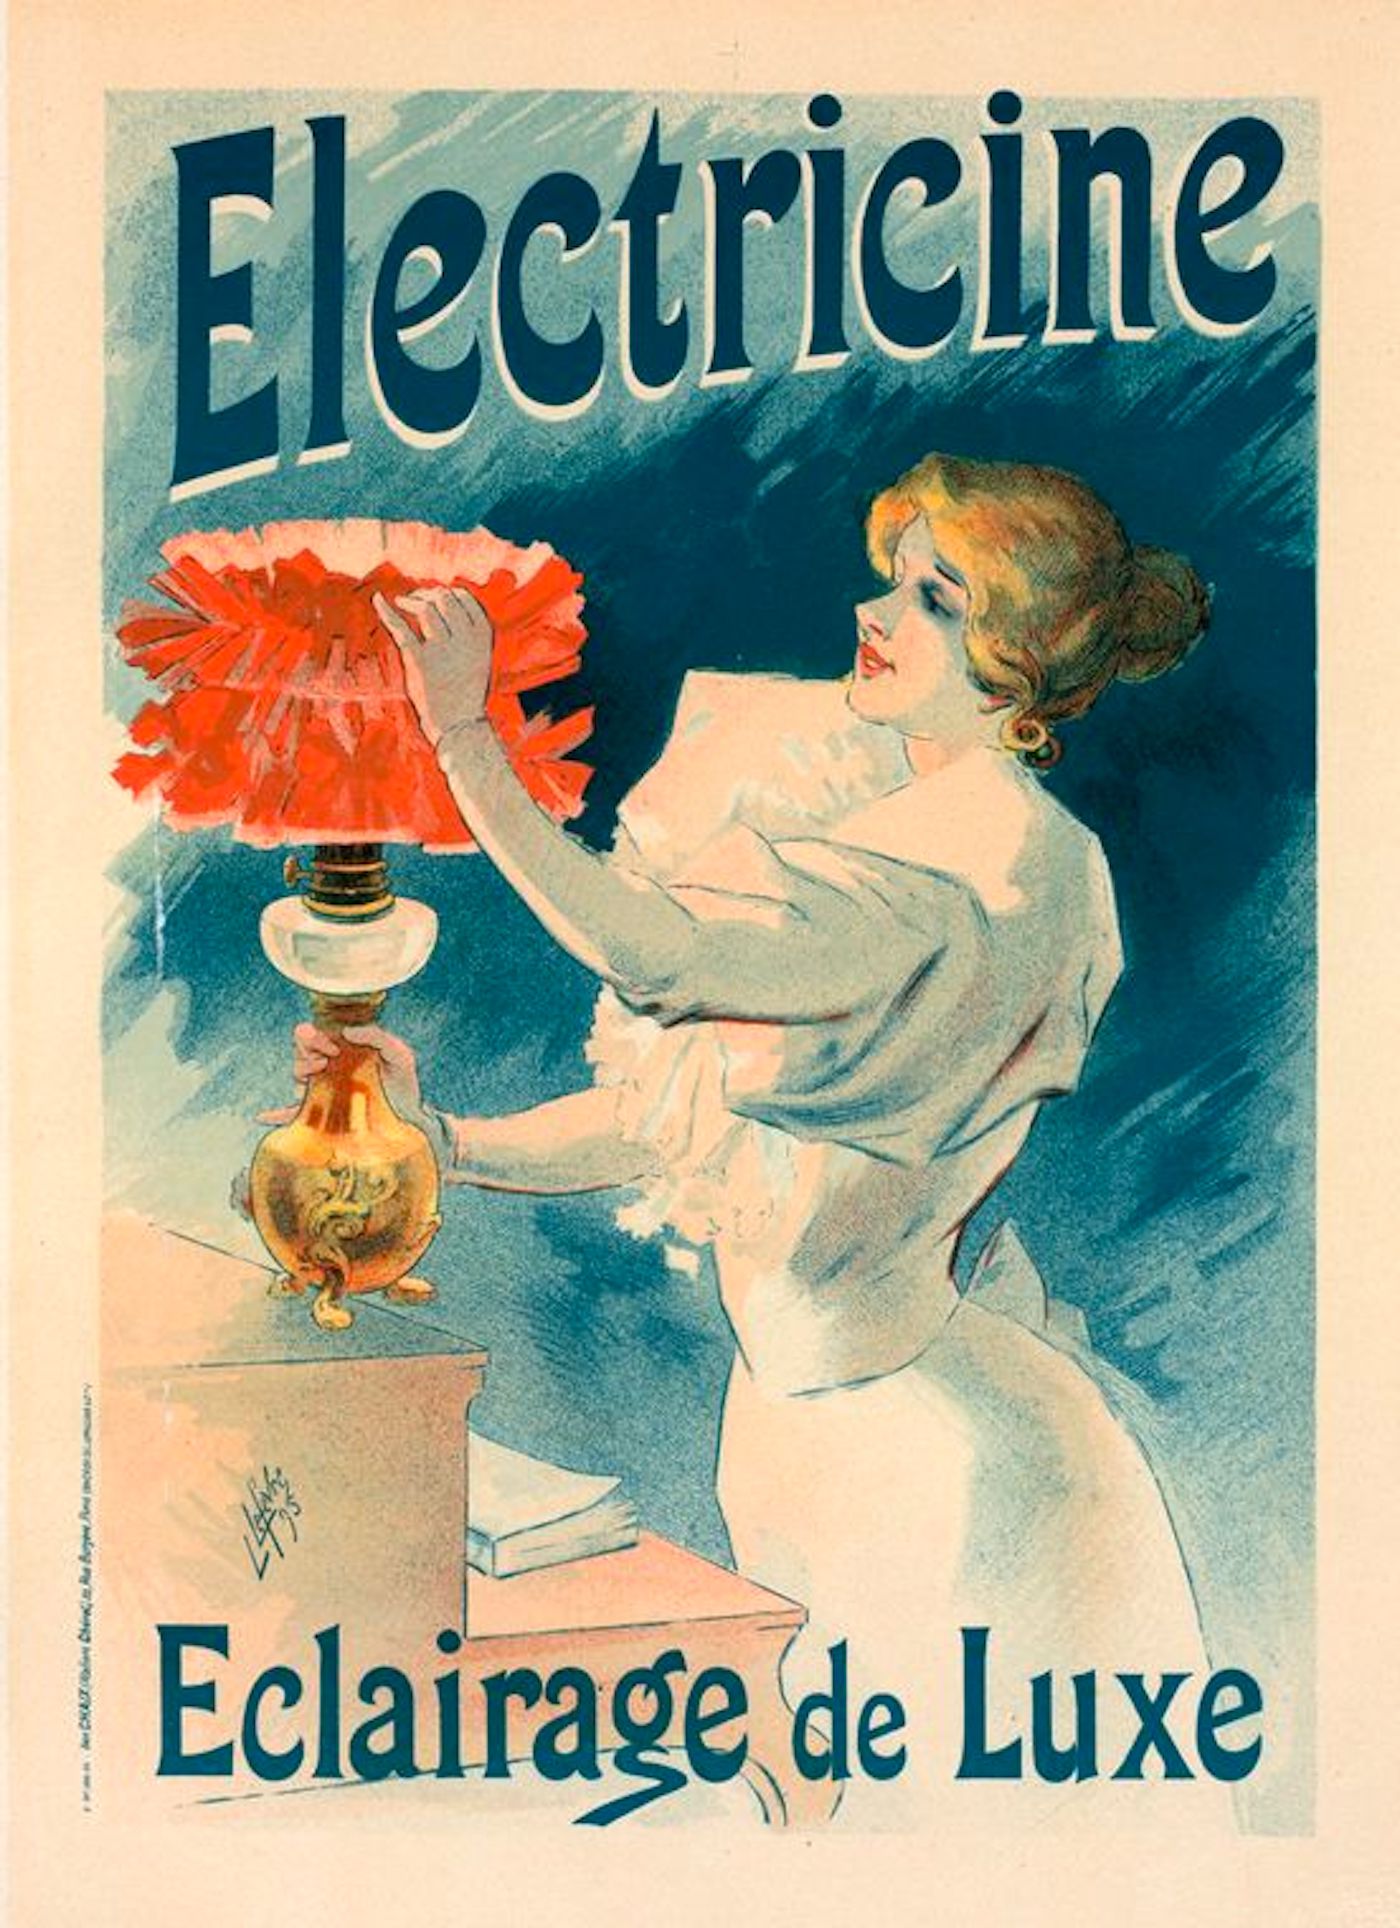  Affiche de publicité pour l'électricité.